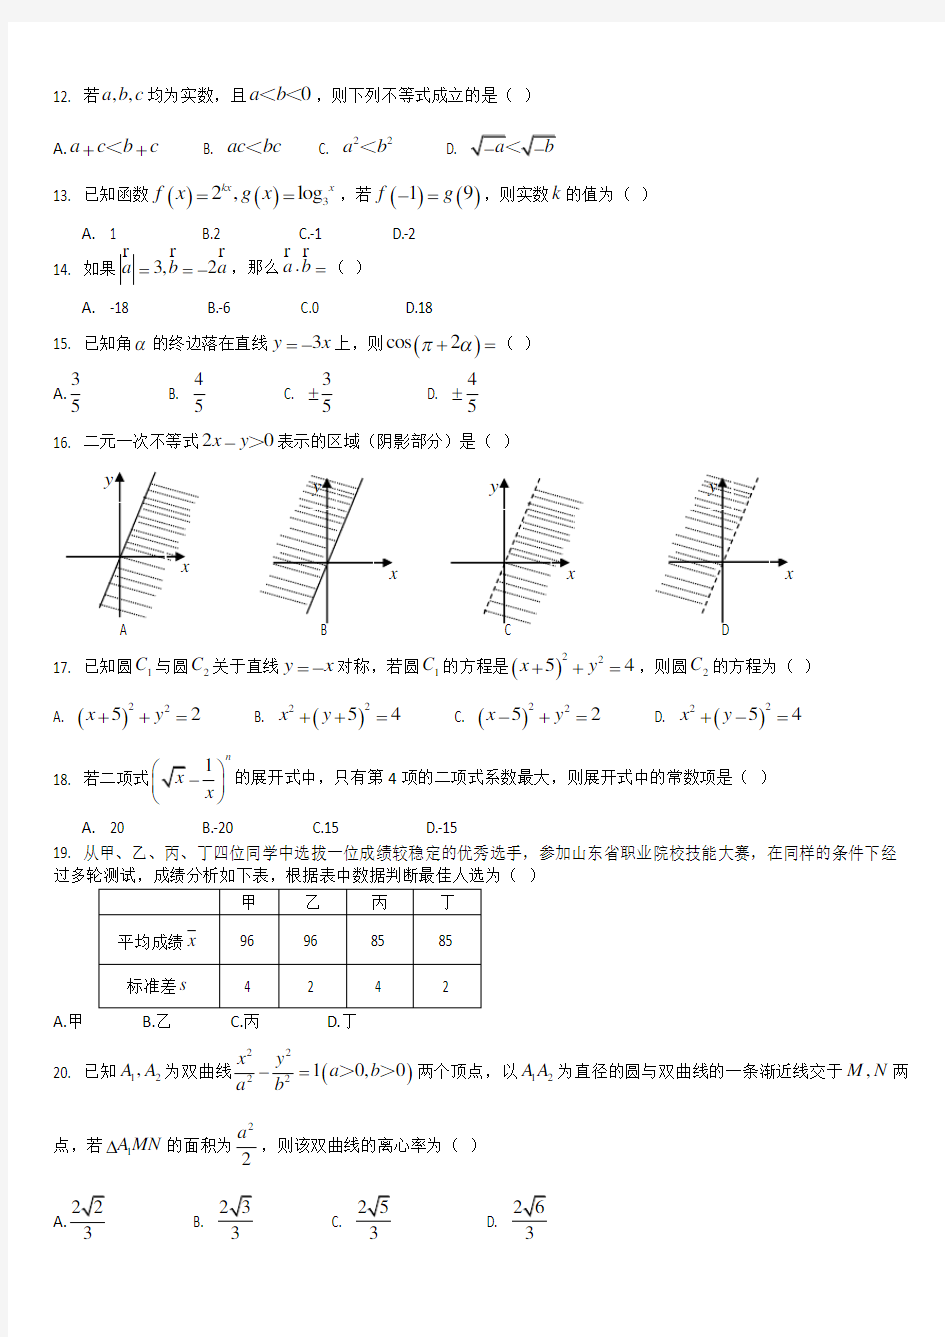 (完整版)2017年山东省春季高考数学试题